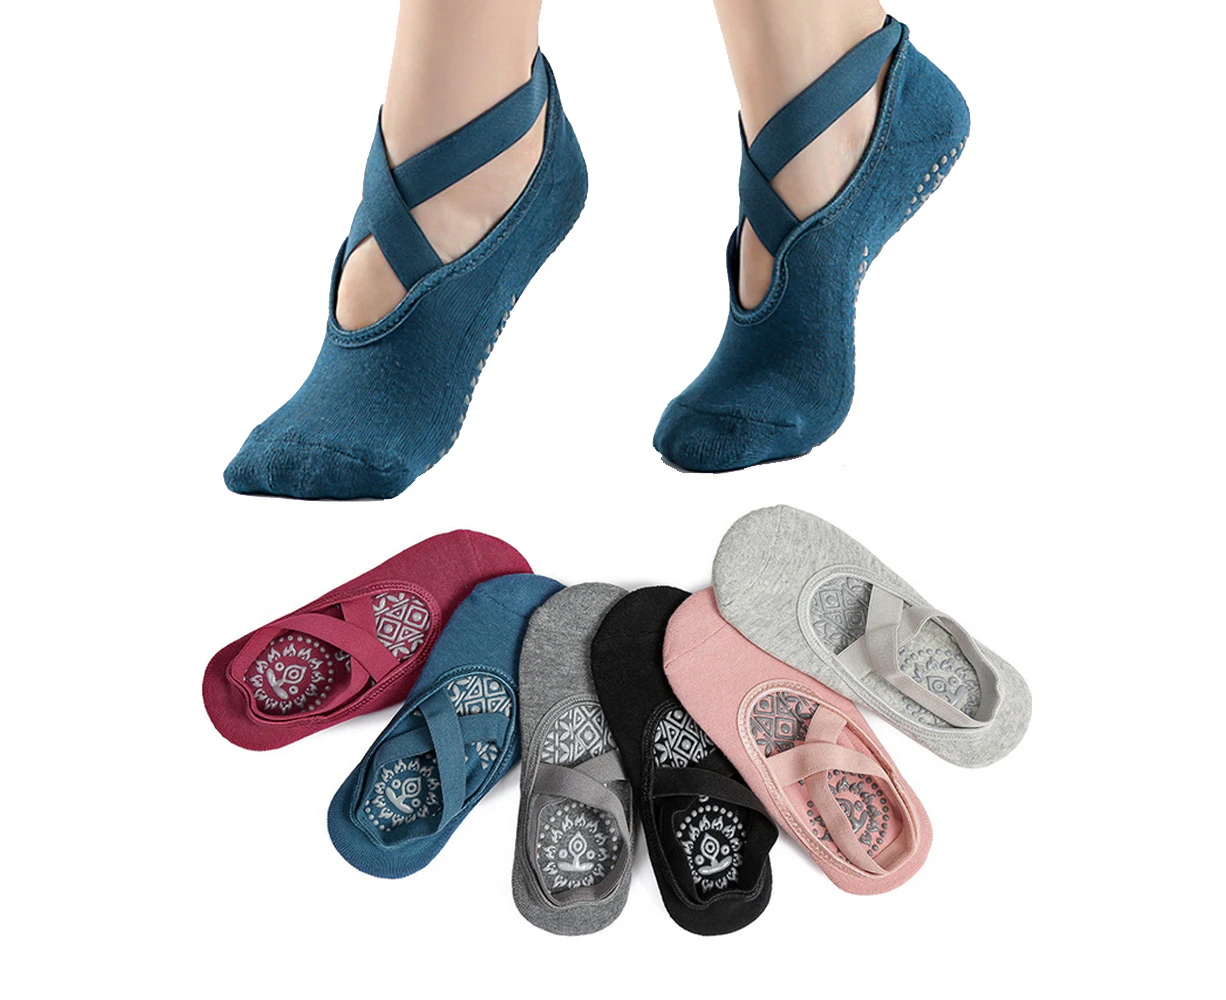 Yoga Socks For Women Non-slip W/ Grips, Ideal For Pilates, Pure